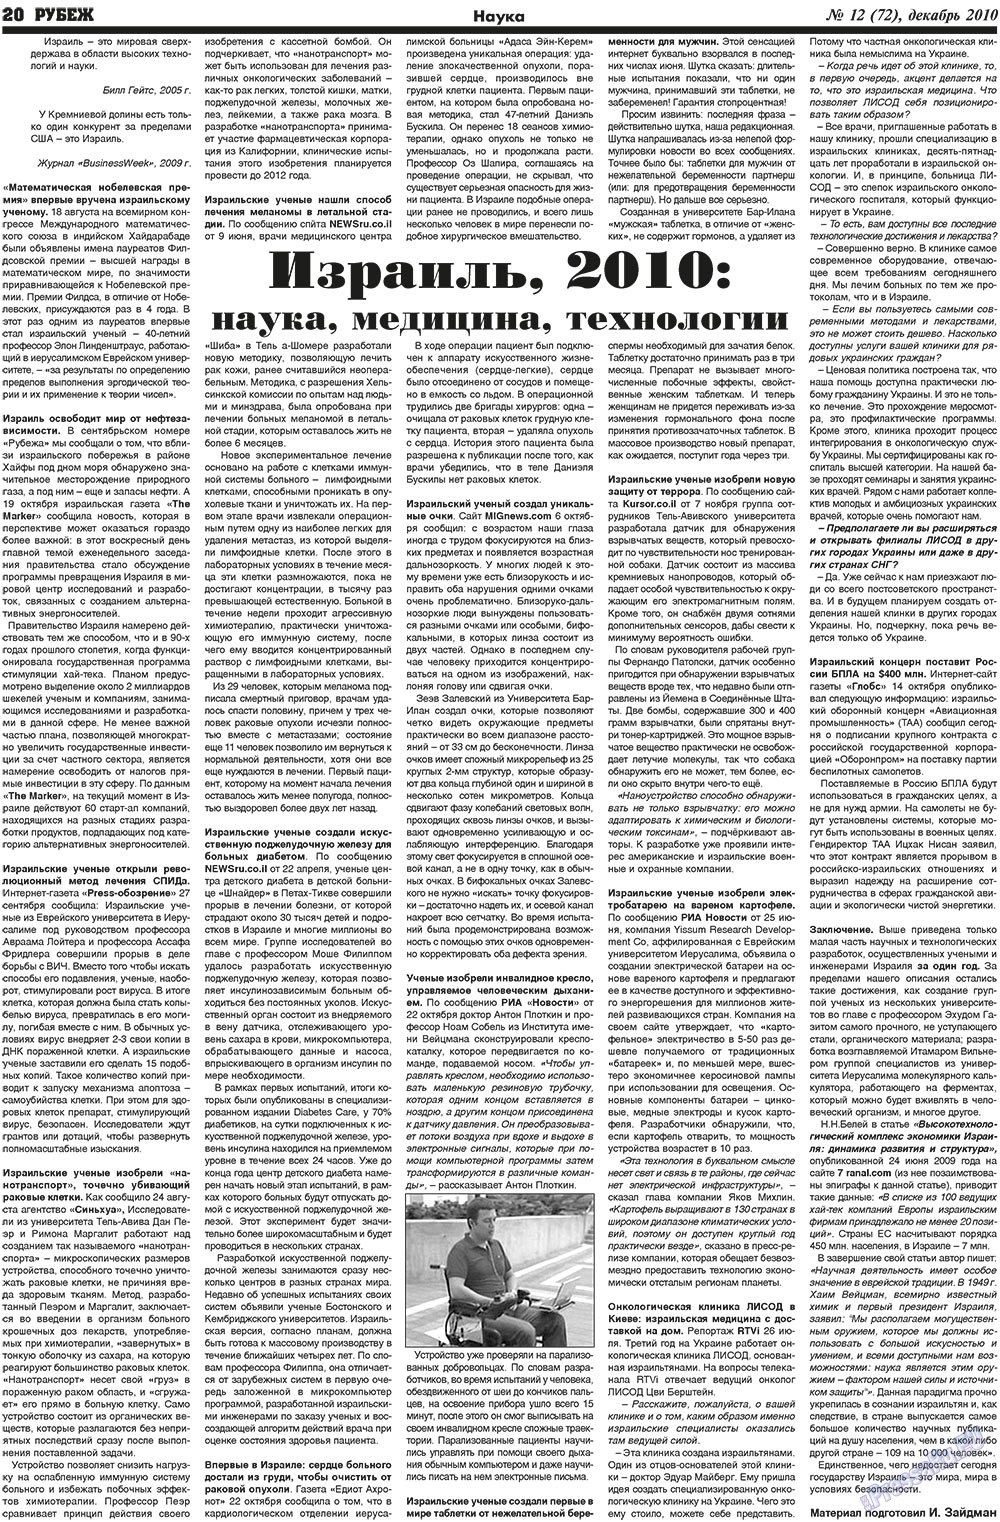 Рубеж (газета). 2010 год, номер 12, стр. 20